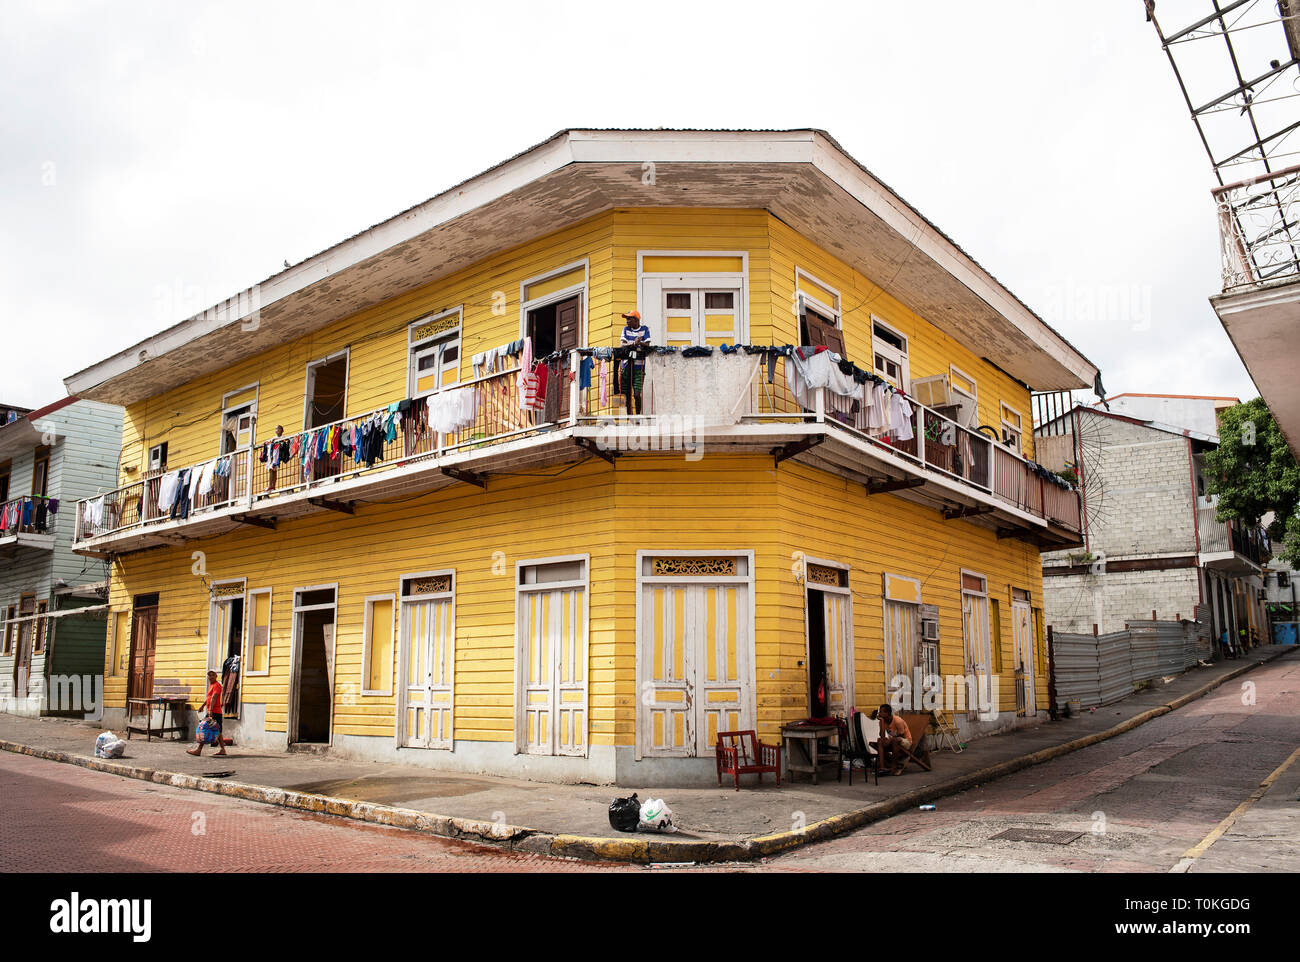 Immeuble résidentiel dans le Casco Viejo (vieille ville) : la ville historique de la ville de Panama, Panama. Oct 2018 Banque D'Images